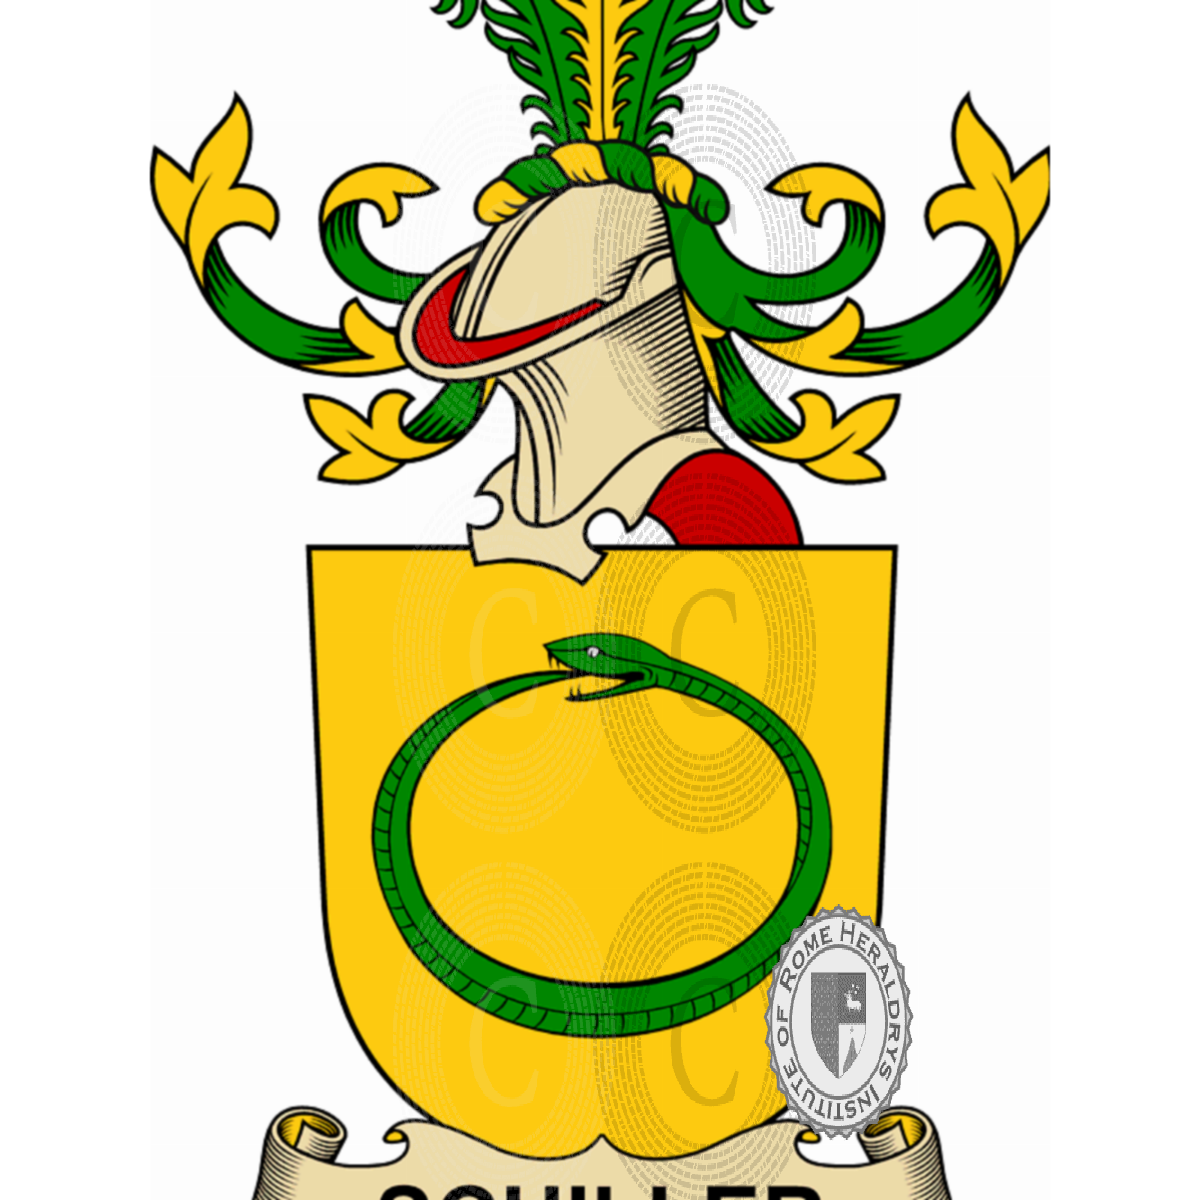 Wappen der FamilieSchiller